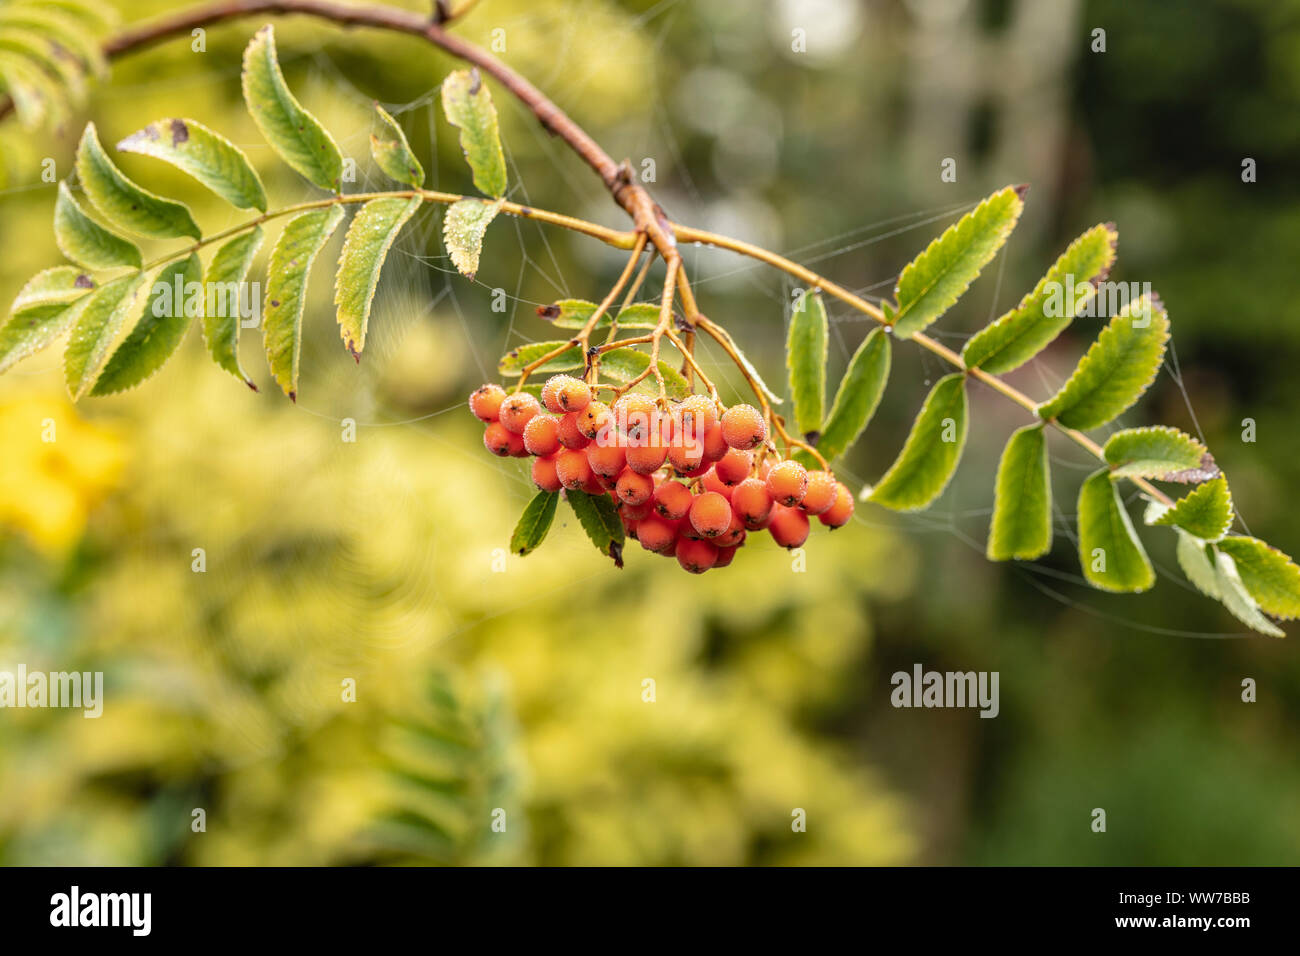 Rowan berry ou mountain ash, Sorbus aucuparia, Pyrus aucuparia, baies on tree Banque D'Images